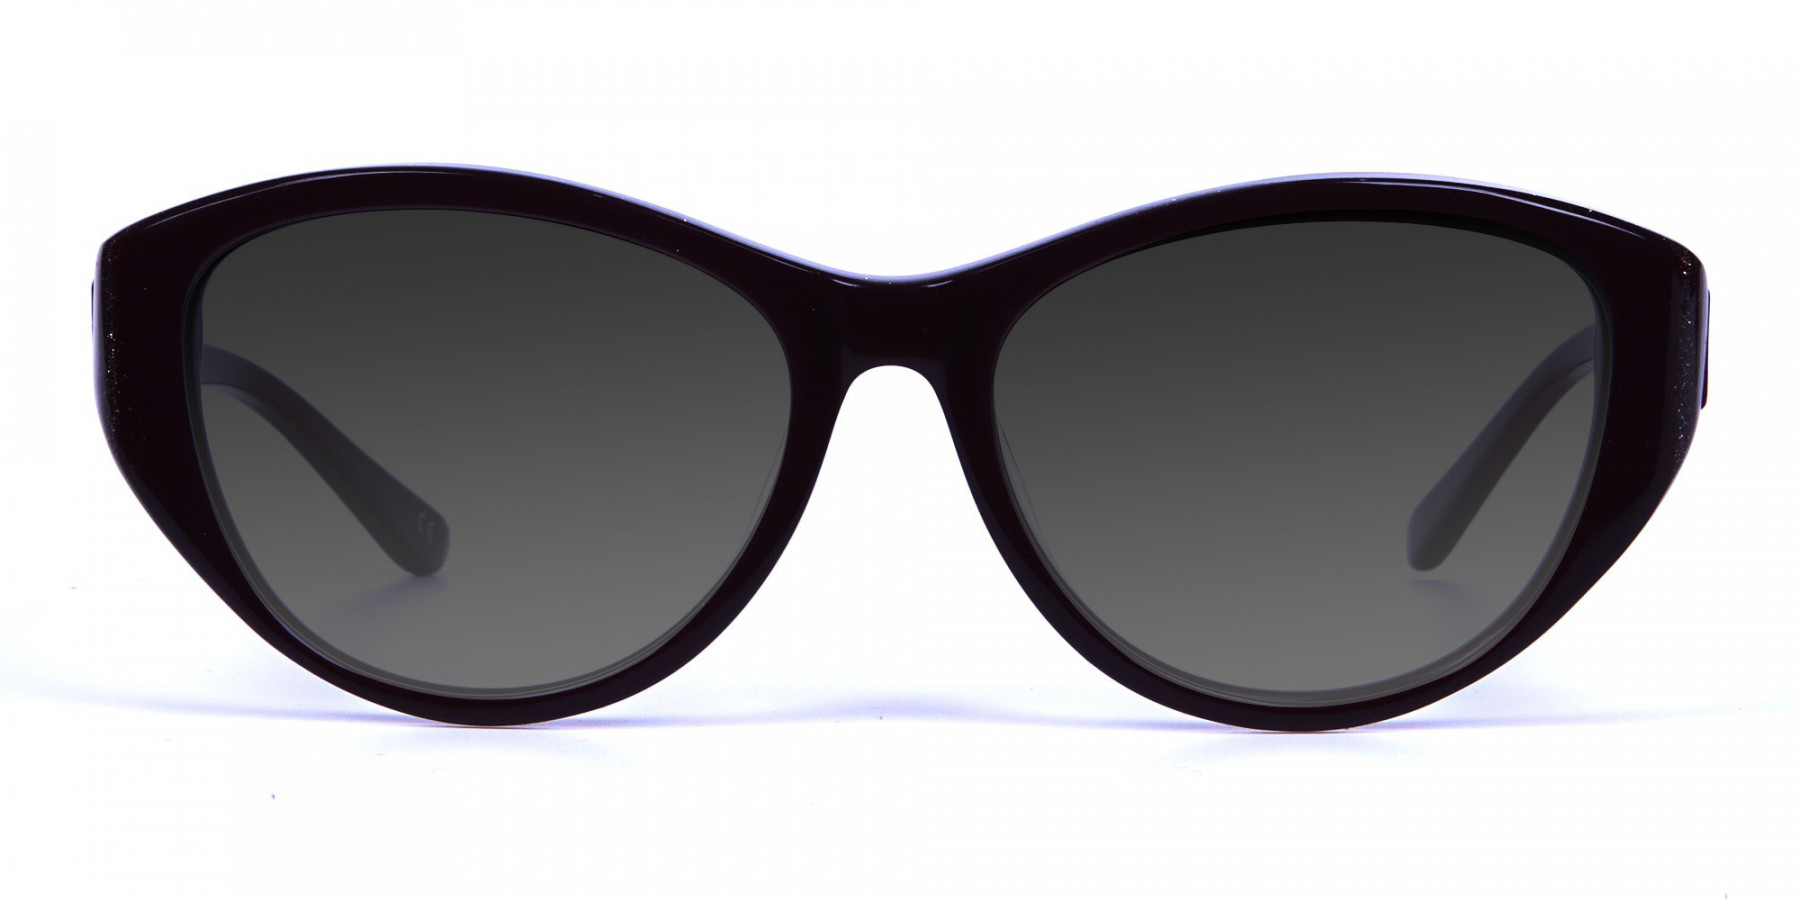 Women's Dark Grey Cat-Eye Sunglasses-3